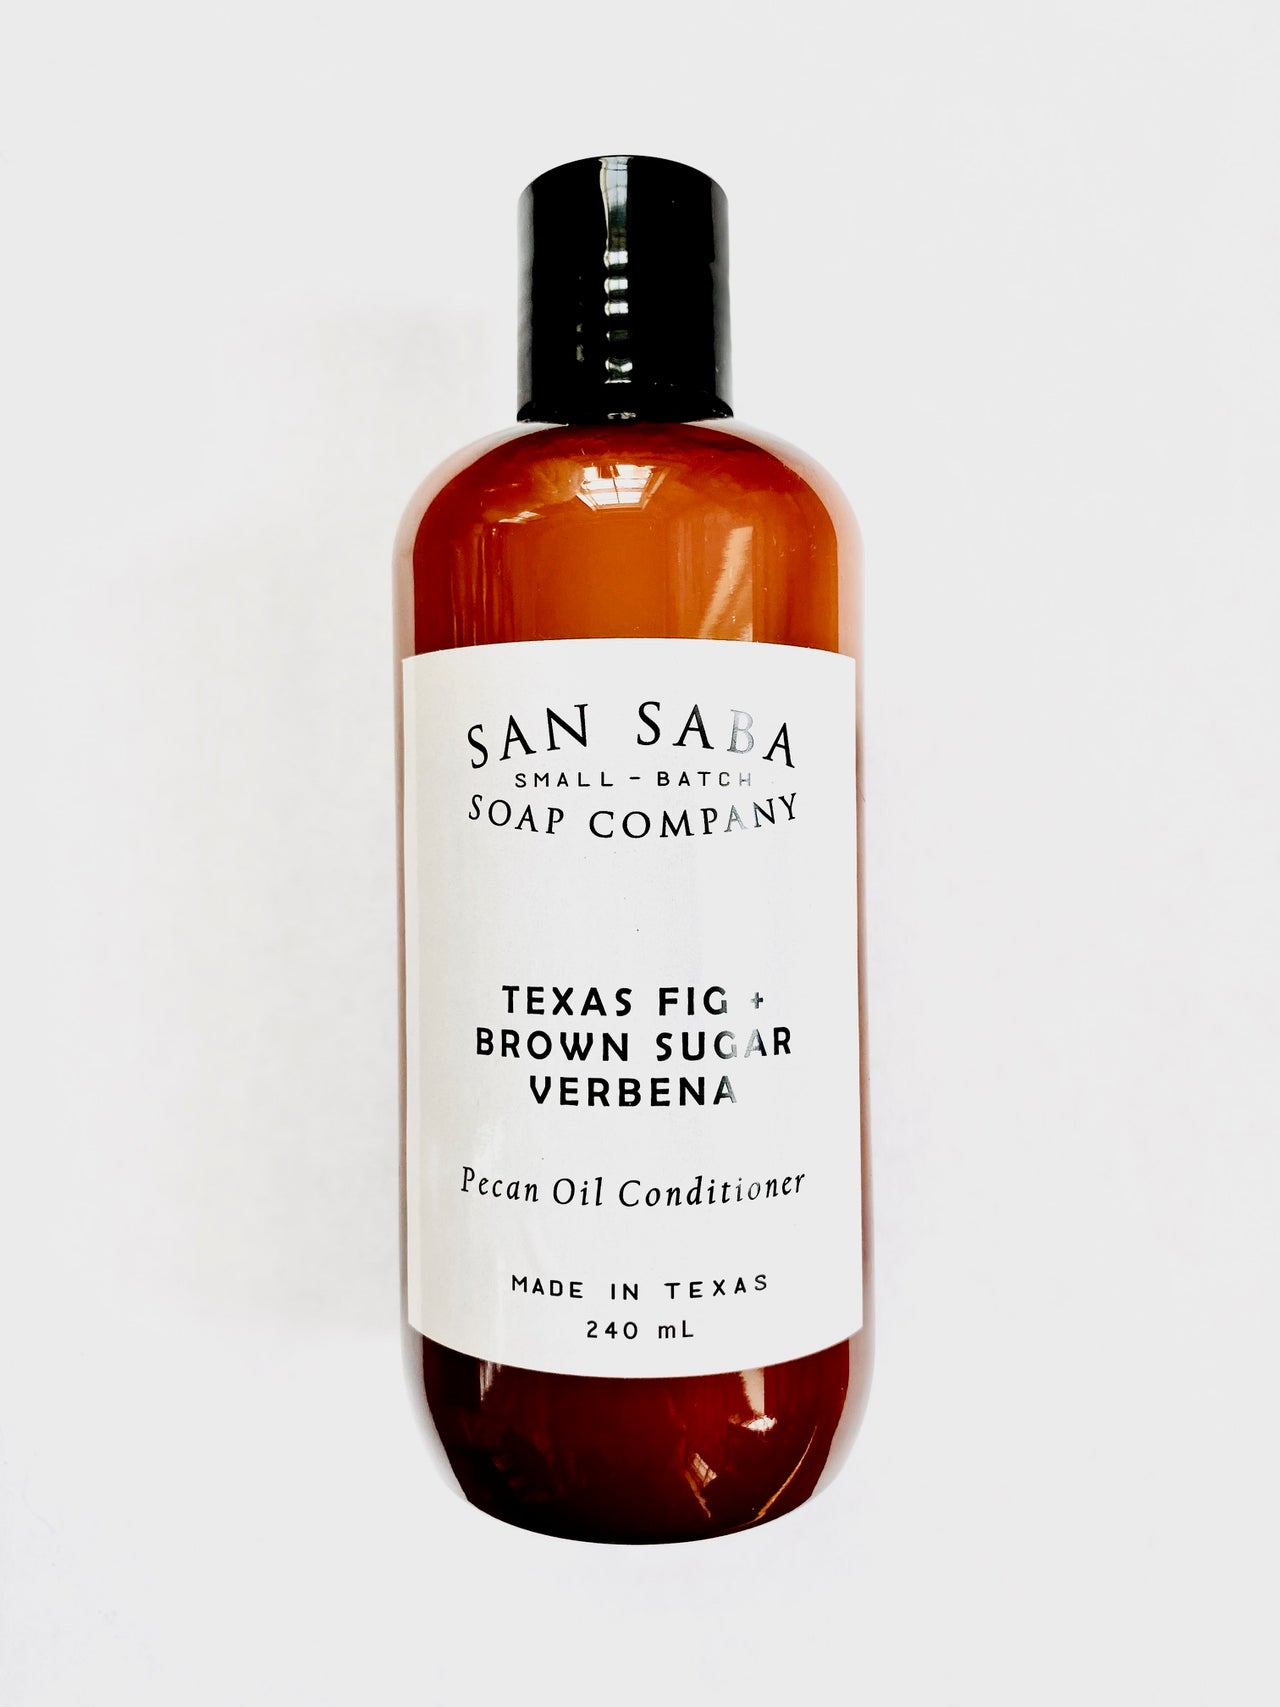 Texas Pecan Oil Conditioner Texas Fig